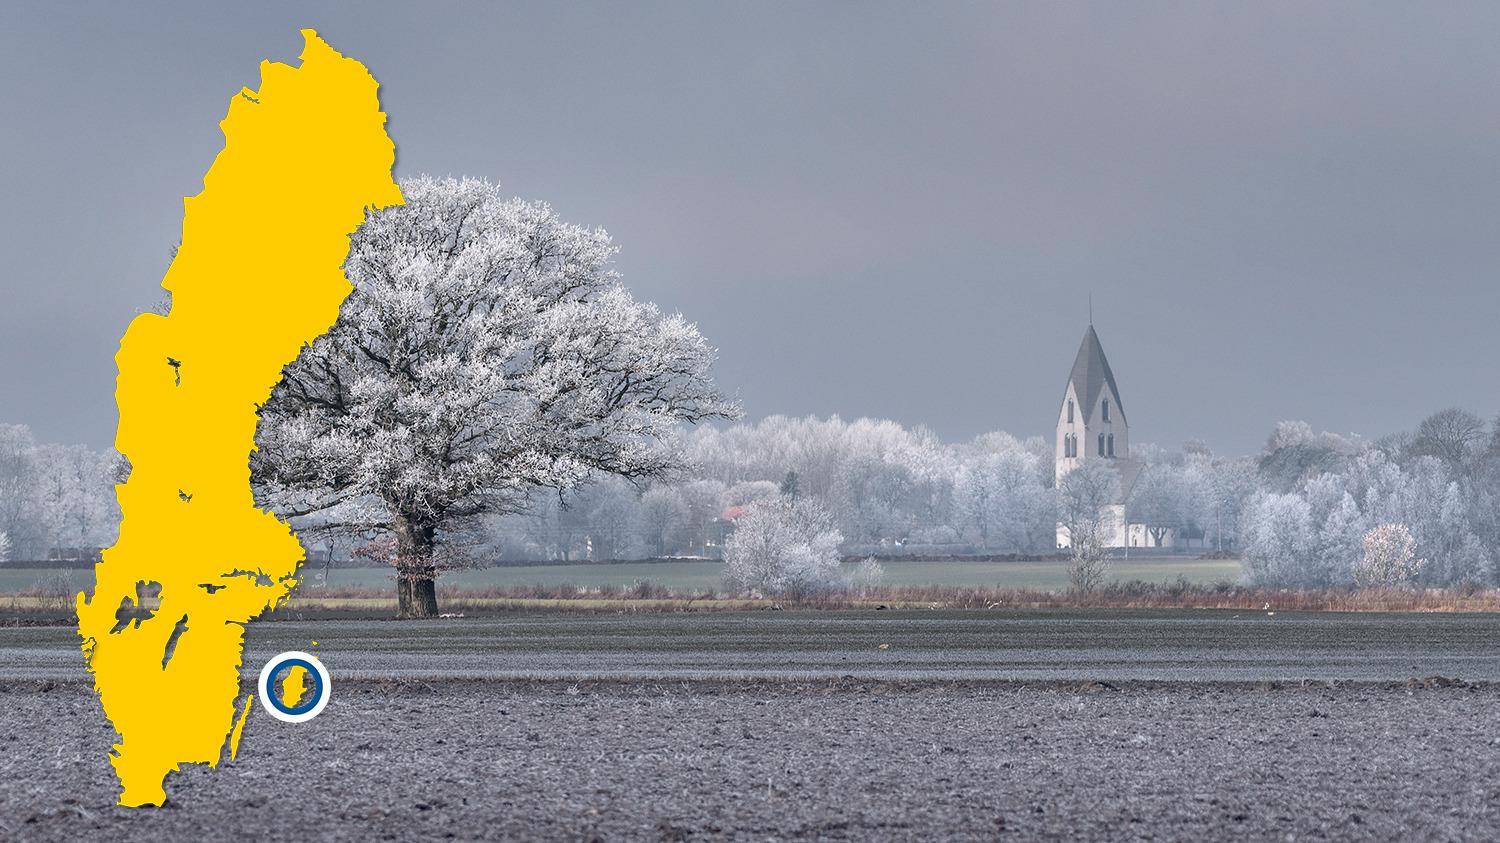 Op de achtergrond van een veld is een witte kerk te zien. De bomen zijn bedekt met vorst. Er is een gele kaart van Zweden met een blauwe stip die Mästerby markeert.